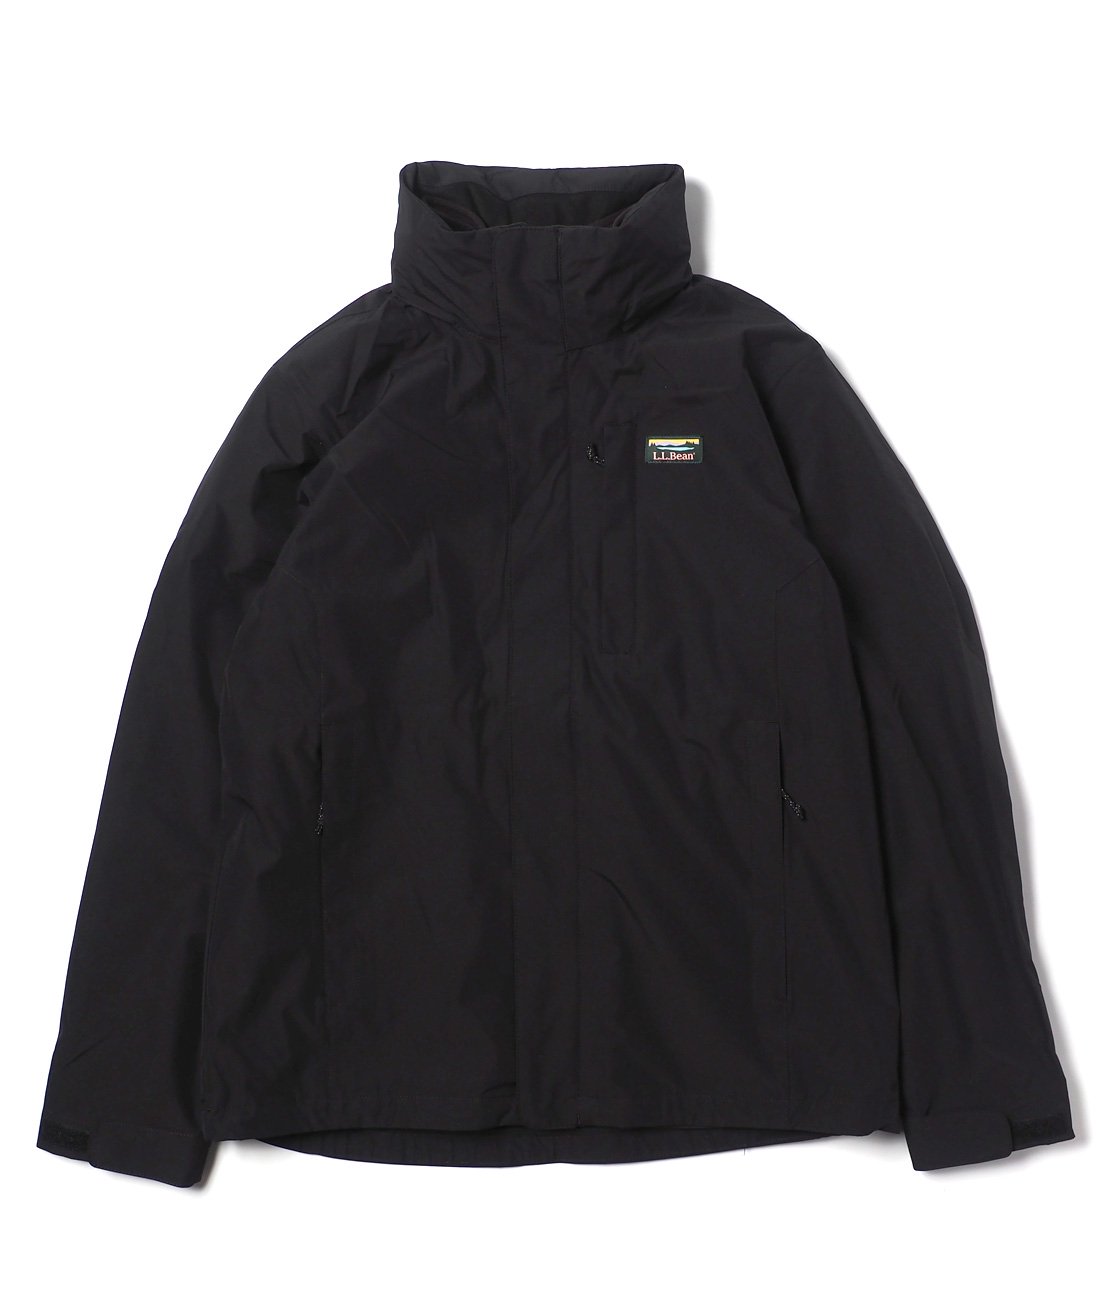 華麗 【未使用品】LLBean 3-in-1ジャケット - ジャンパー/ブルゾン